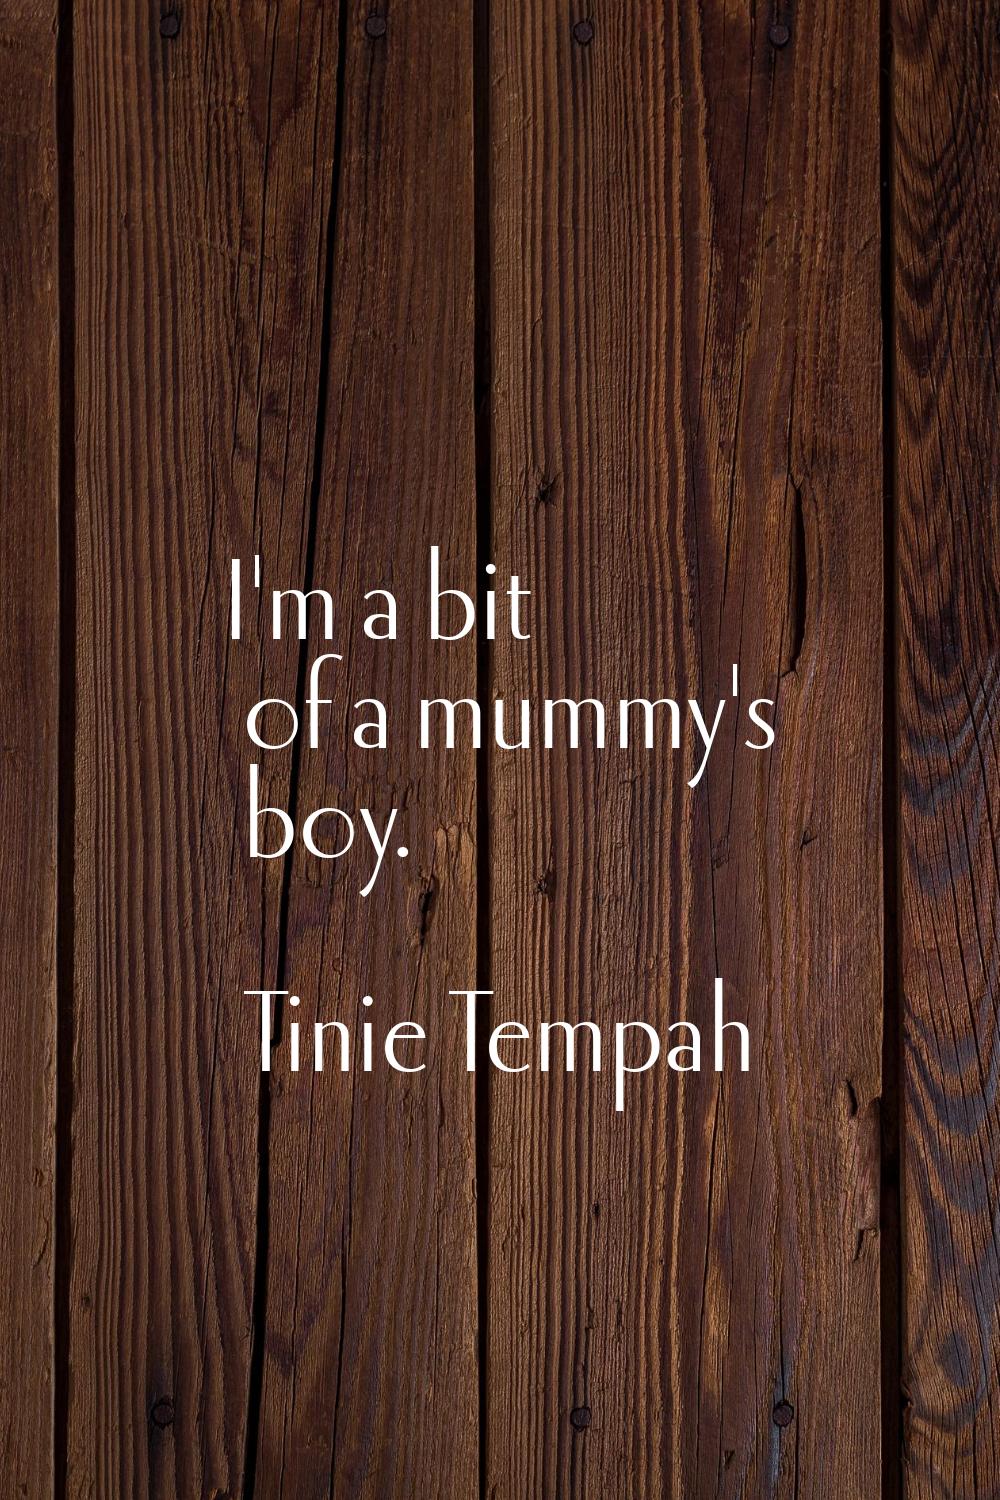 I'm a bit of a mummy's boy.